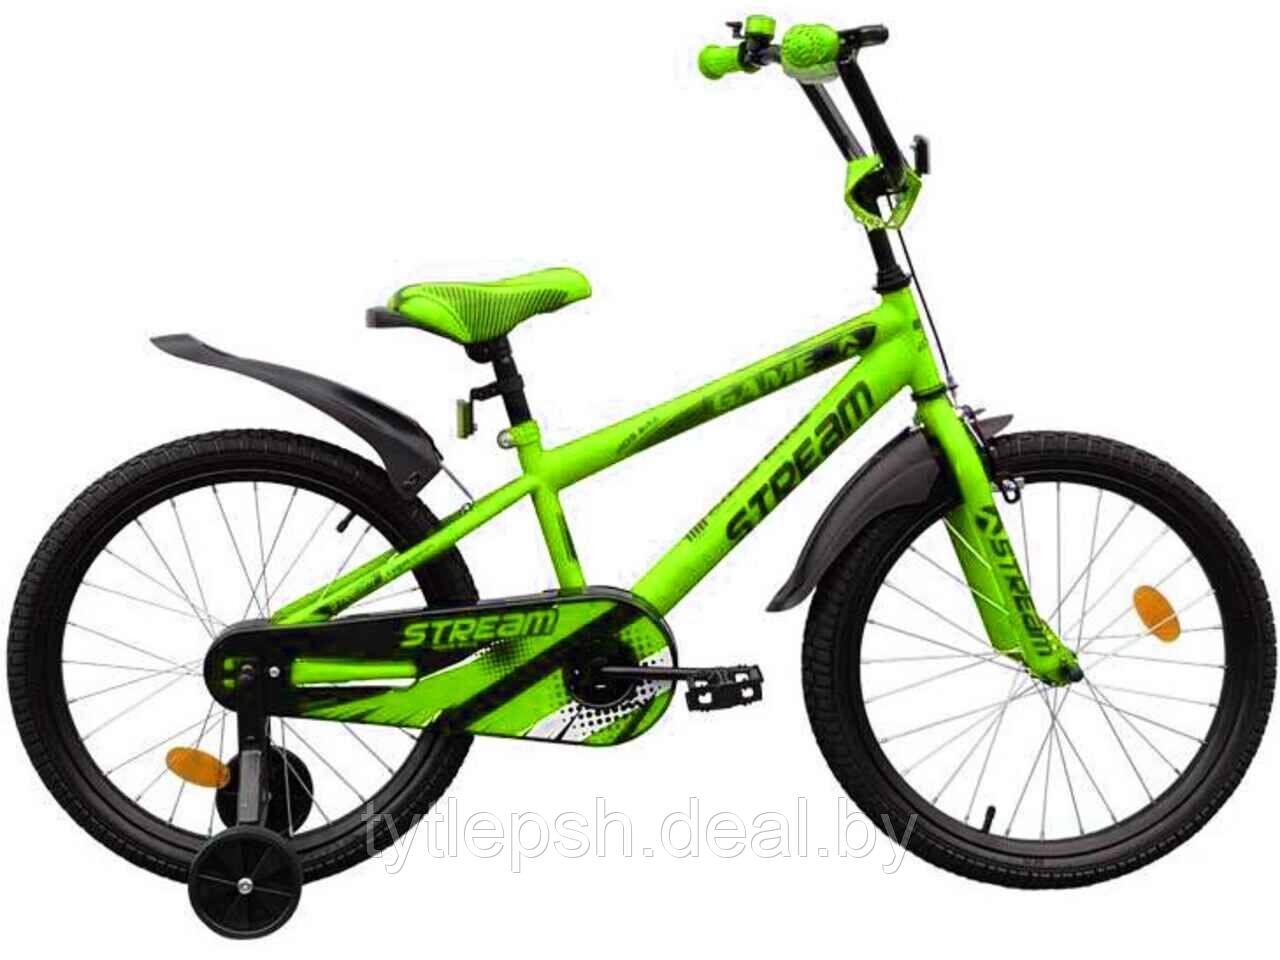 Велосипед детский Stream Game 20 (зеленый, 2020)